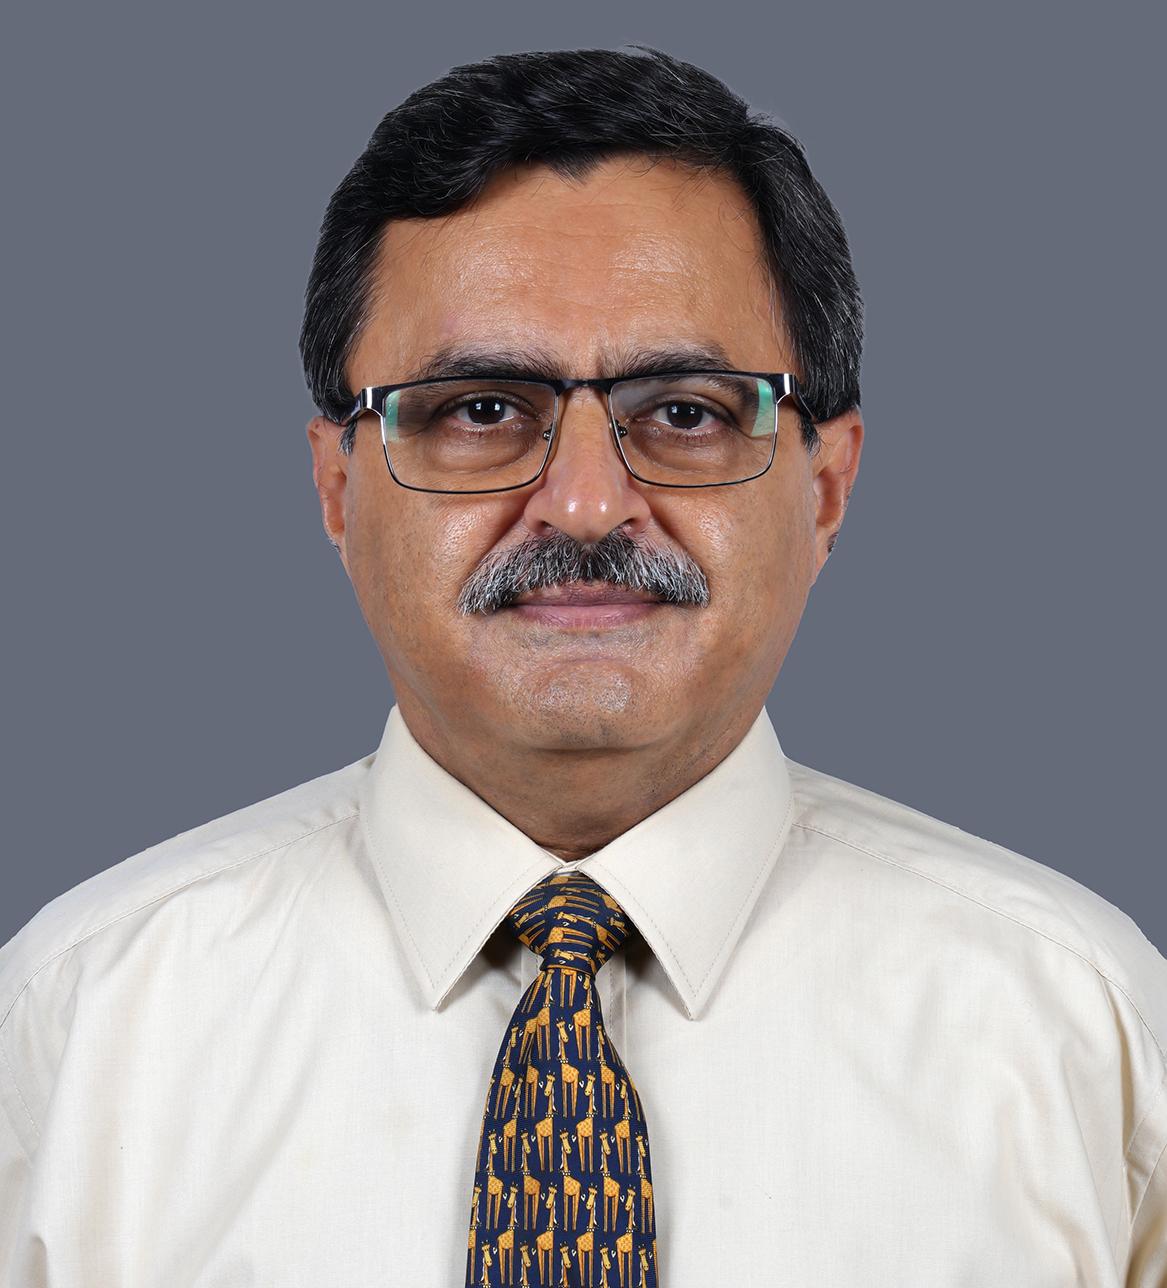 Dr. Vivek Chopra